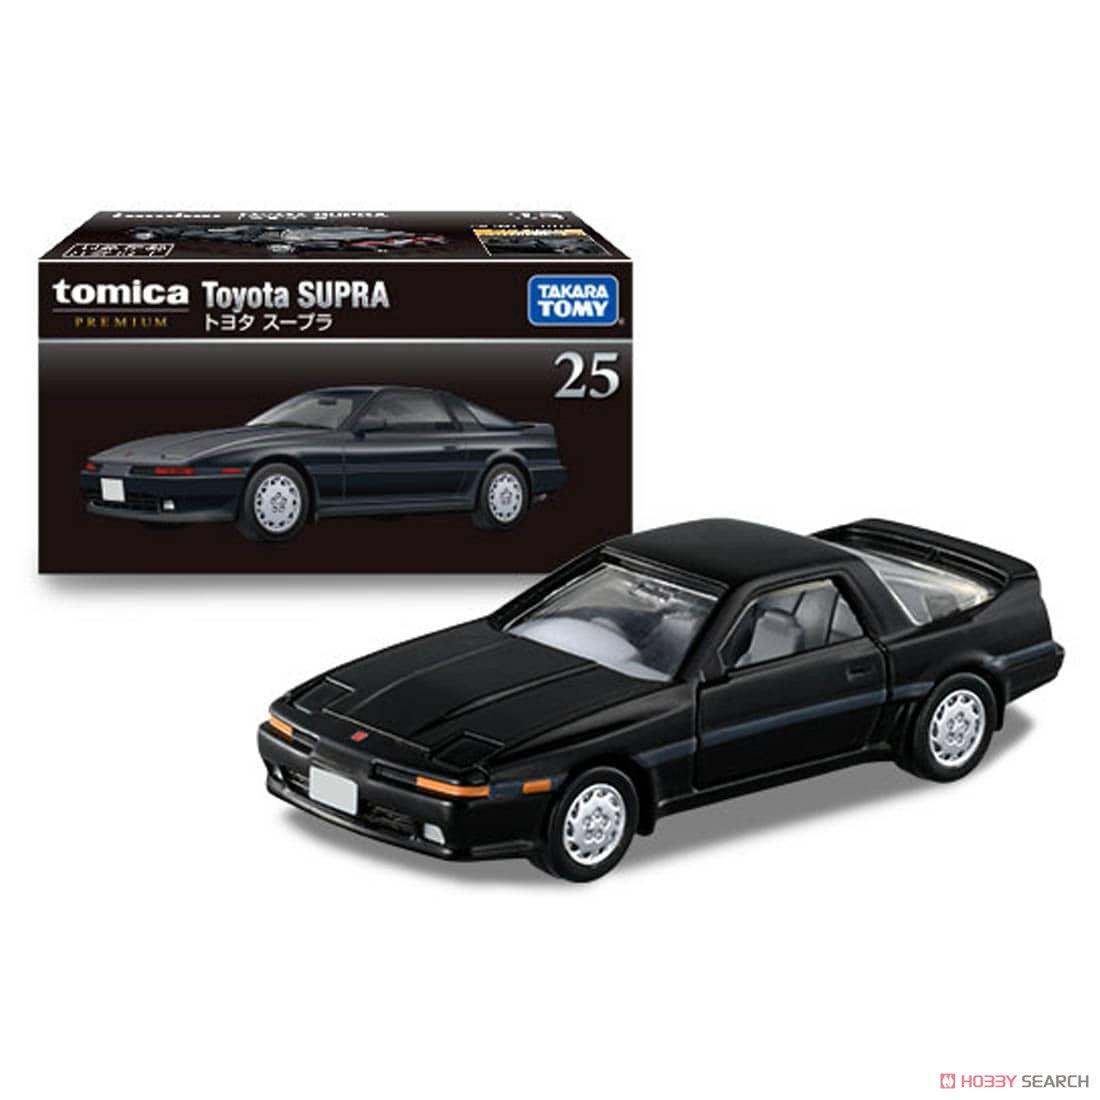 Tomica Premium 25 Toyota Supra Black